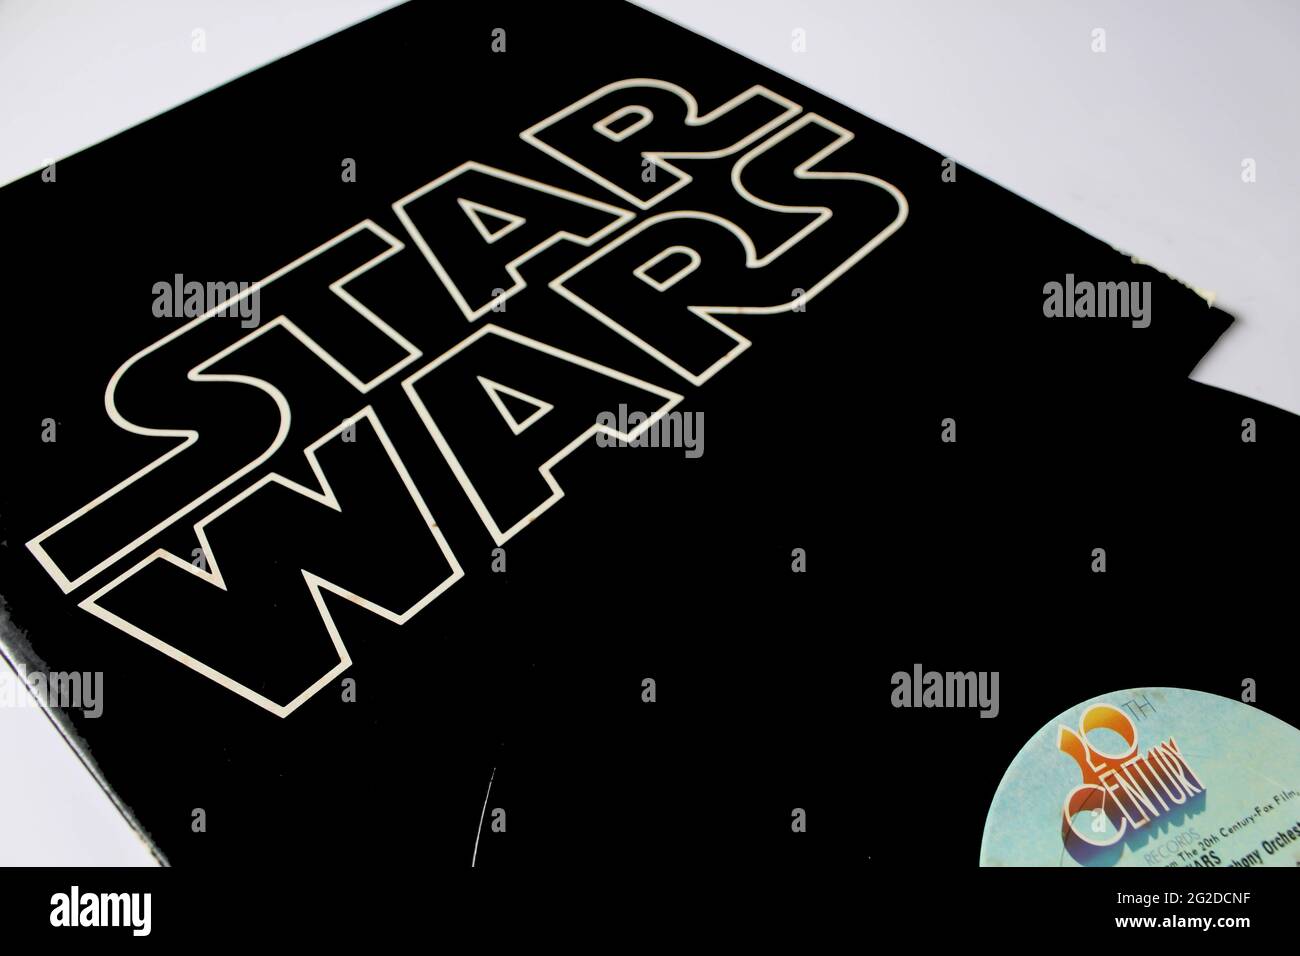 Star Wars ist das Soundtrack-Album zum Film Star Wars von 1977, Musik von John Williams und aufgeführt vom London Symphony Orchestra. Vinyl-Schallplattenalbum Stockfoto